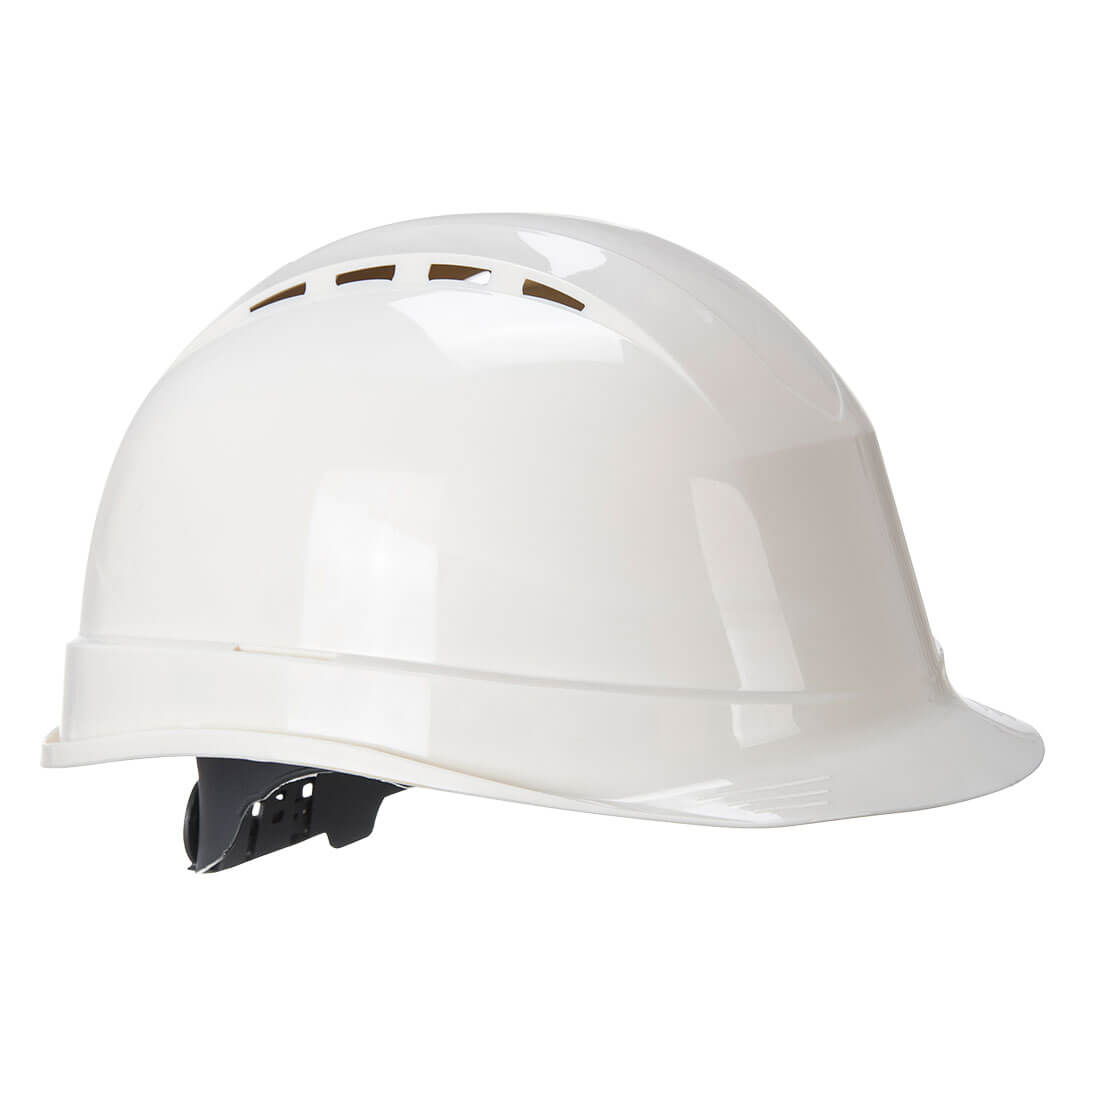 Arrow Safety Helmet   Size  White